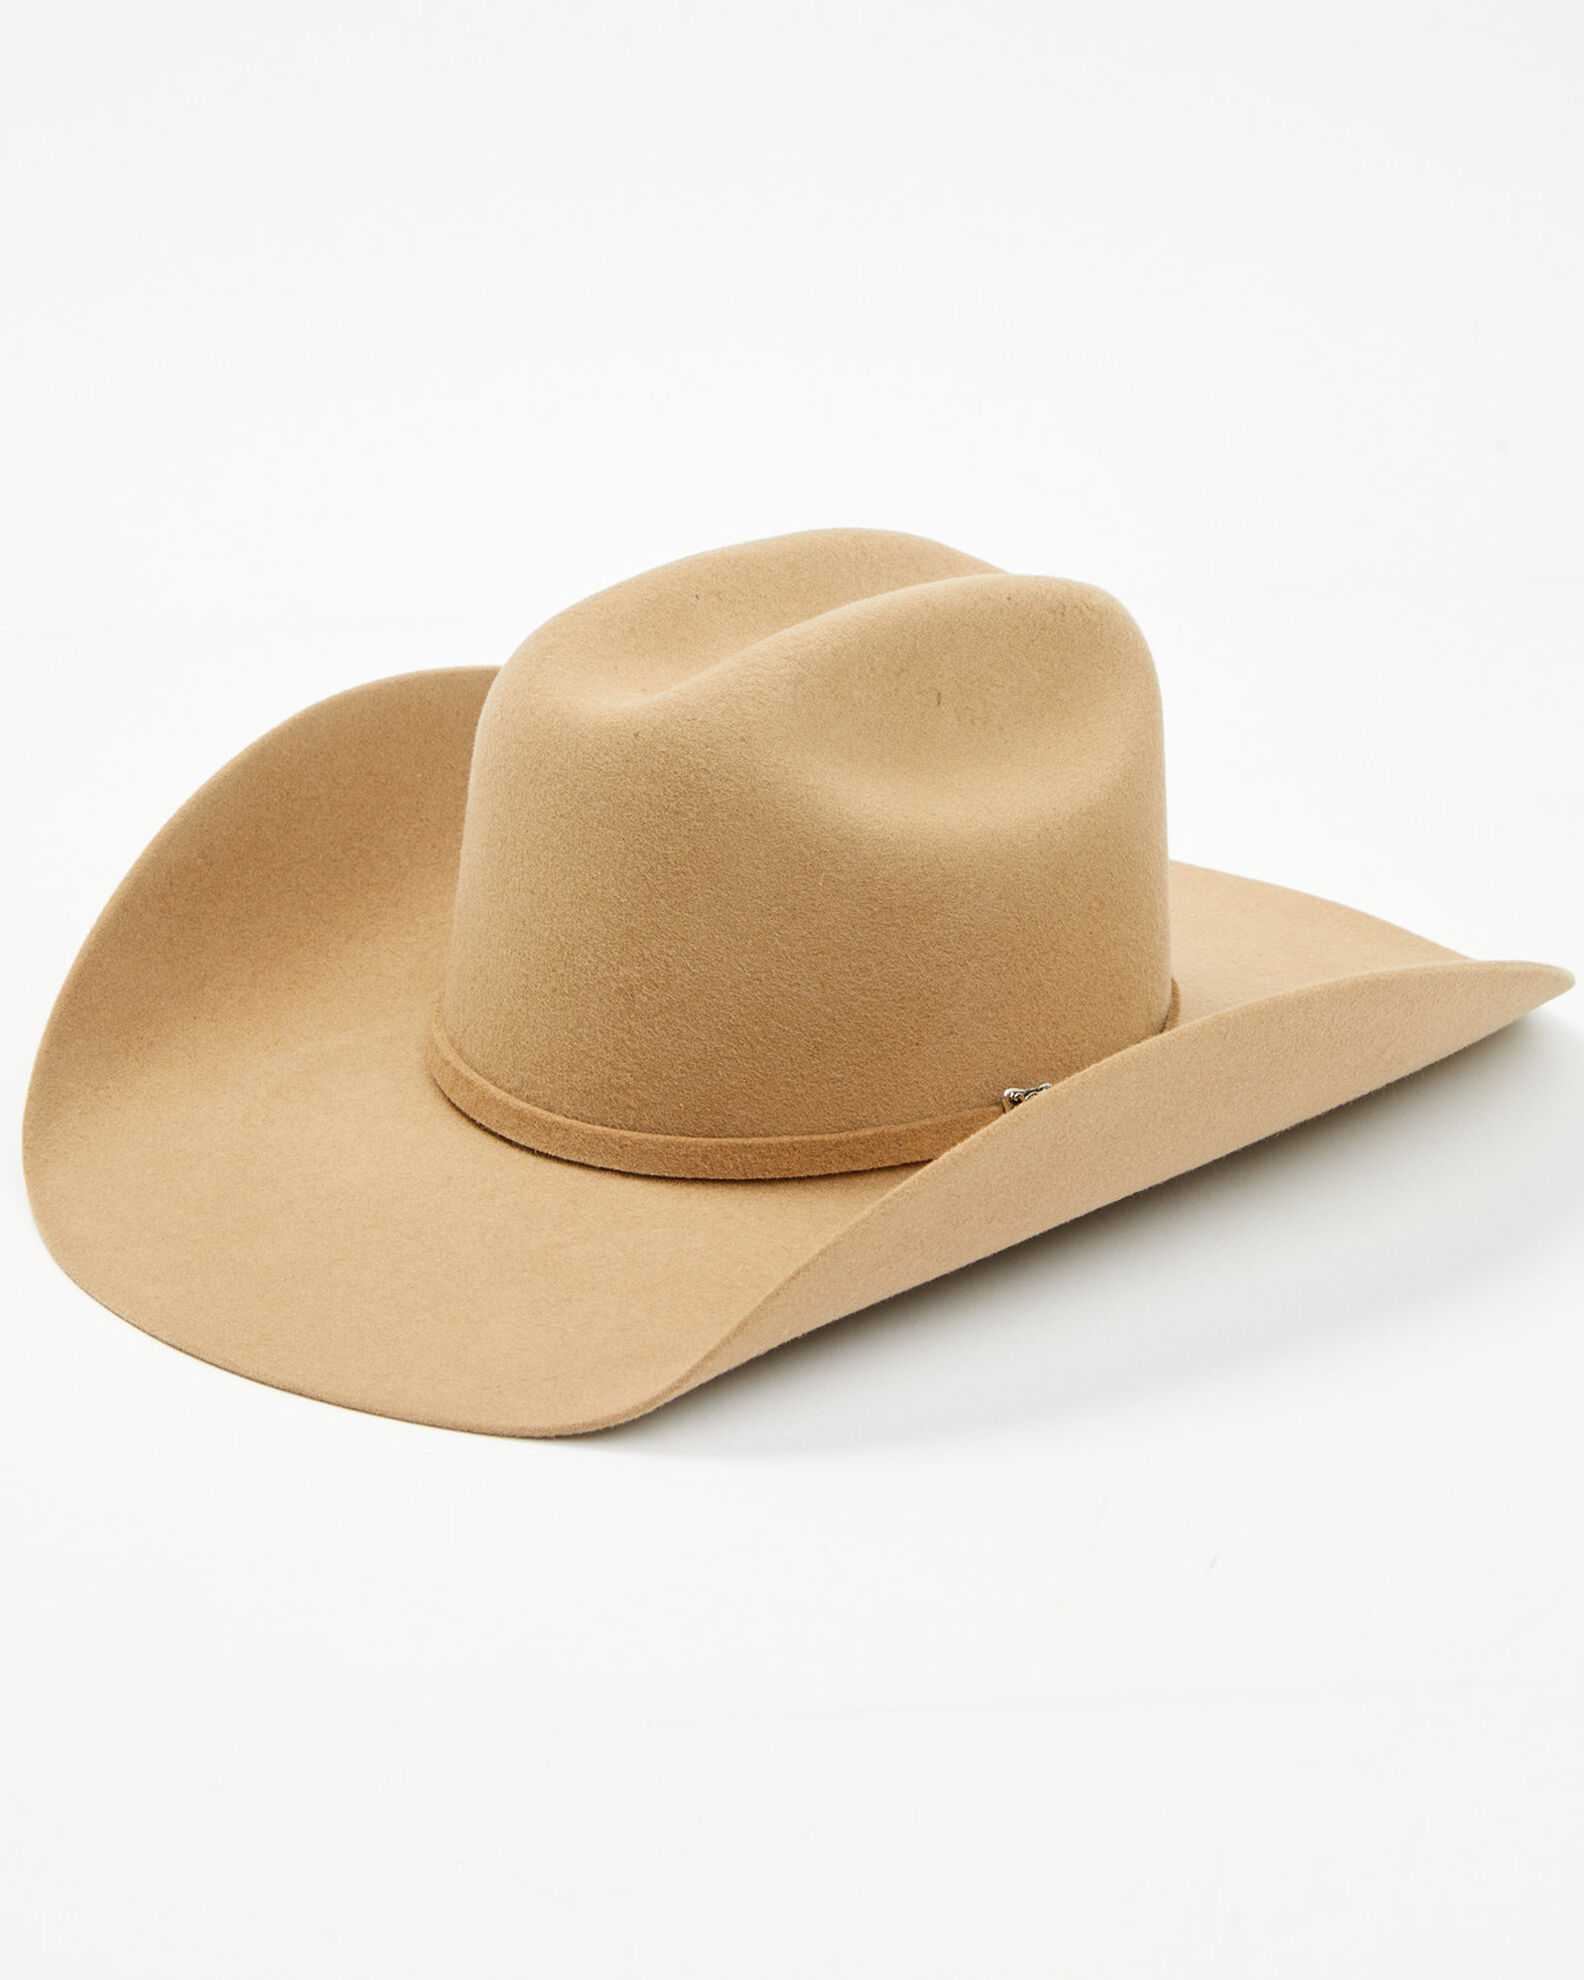 Cody James Men's Pecan 5X Colt Felt Hat